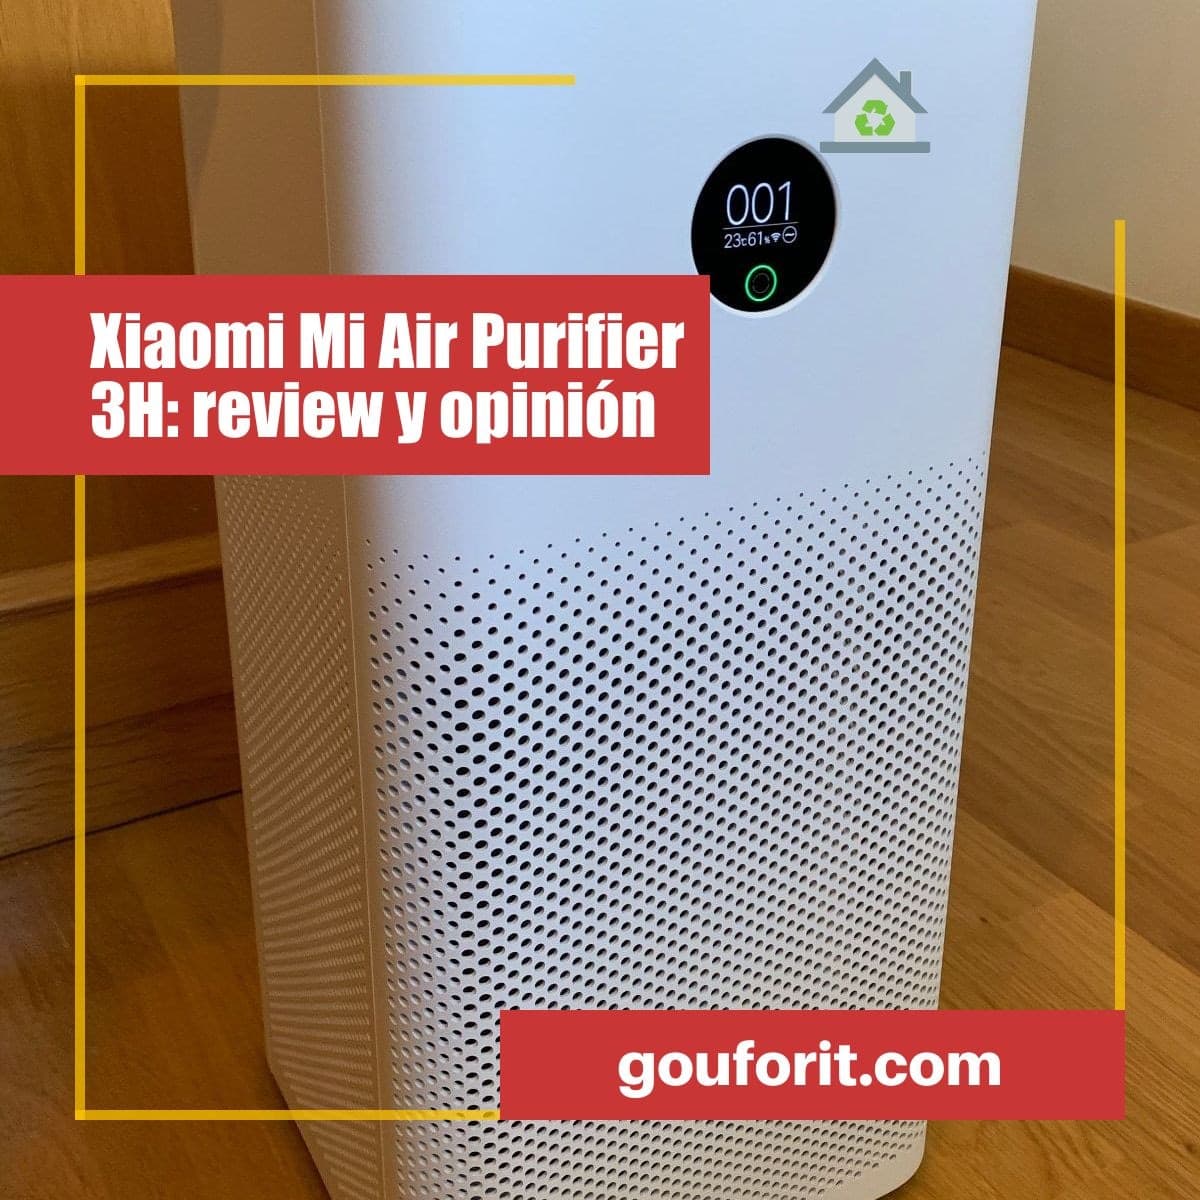 Xiaomi Mi Air Purifier 3H: review y opinión